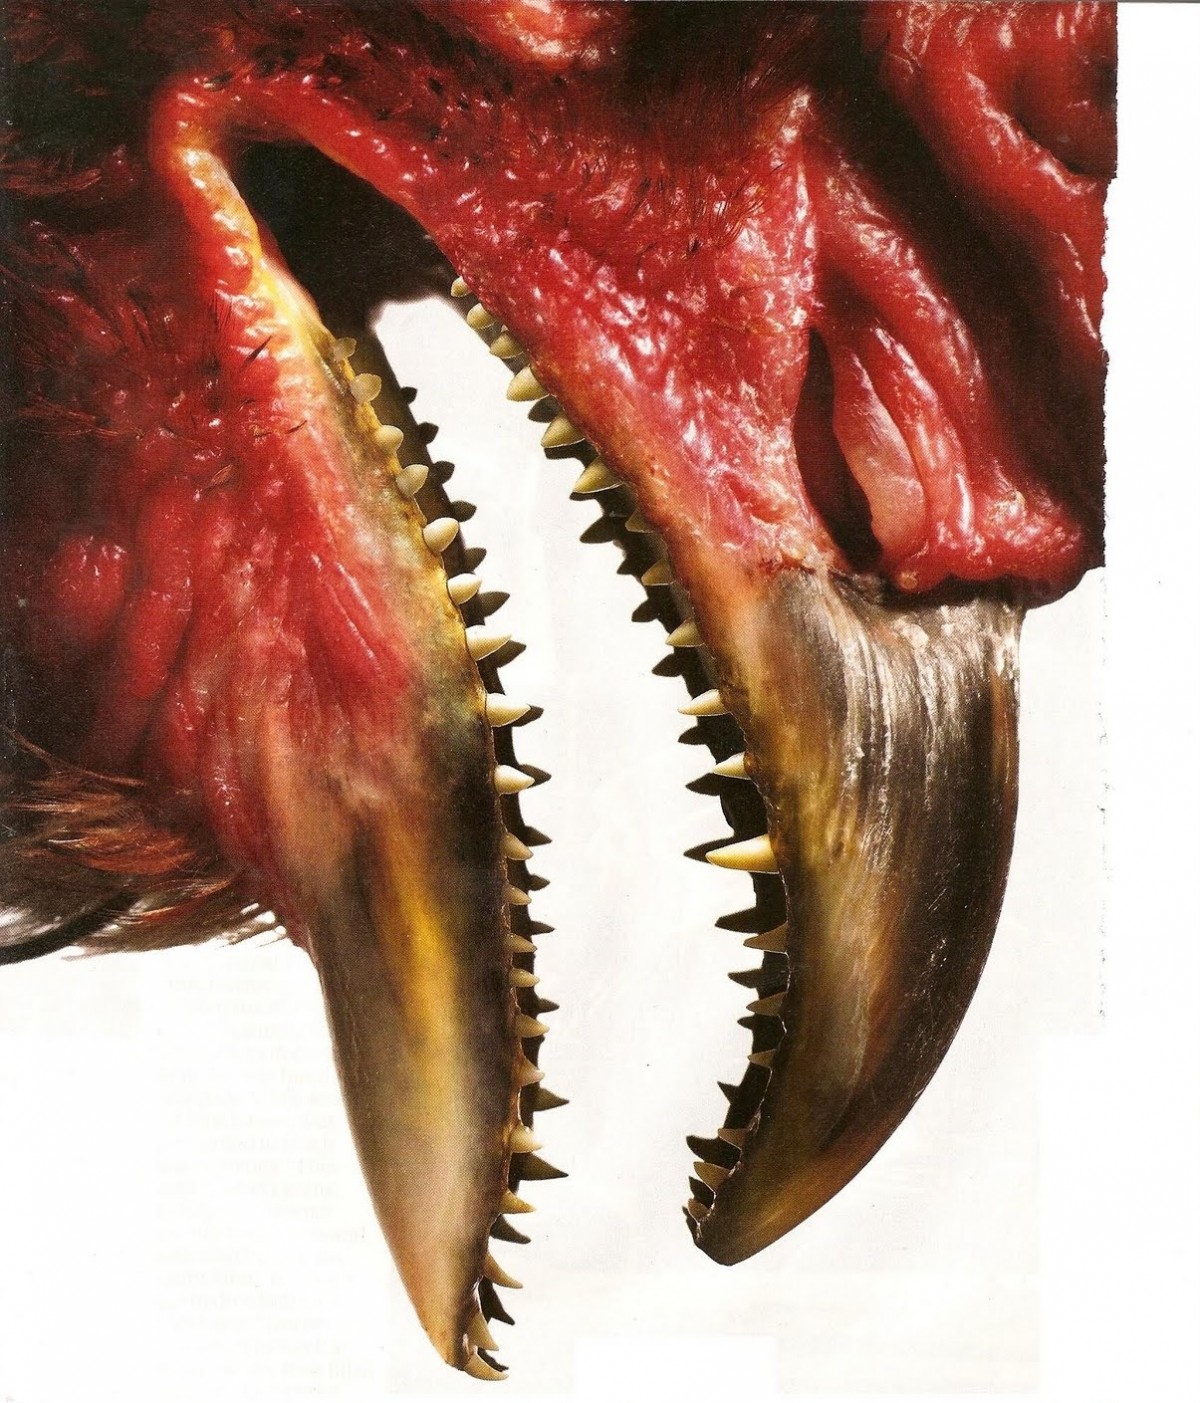 Tavuklardaki dişleri, en yakın akrabaları (ve hatta ataları) arasında bulunan dinozorlardan T-rex'lere benzeten bir gösterim... Gerçek bir fotoğraf değildir.